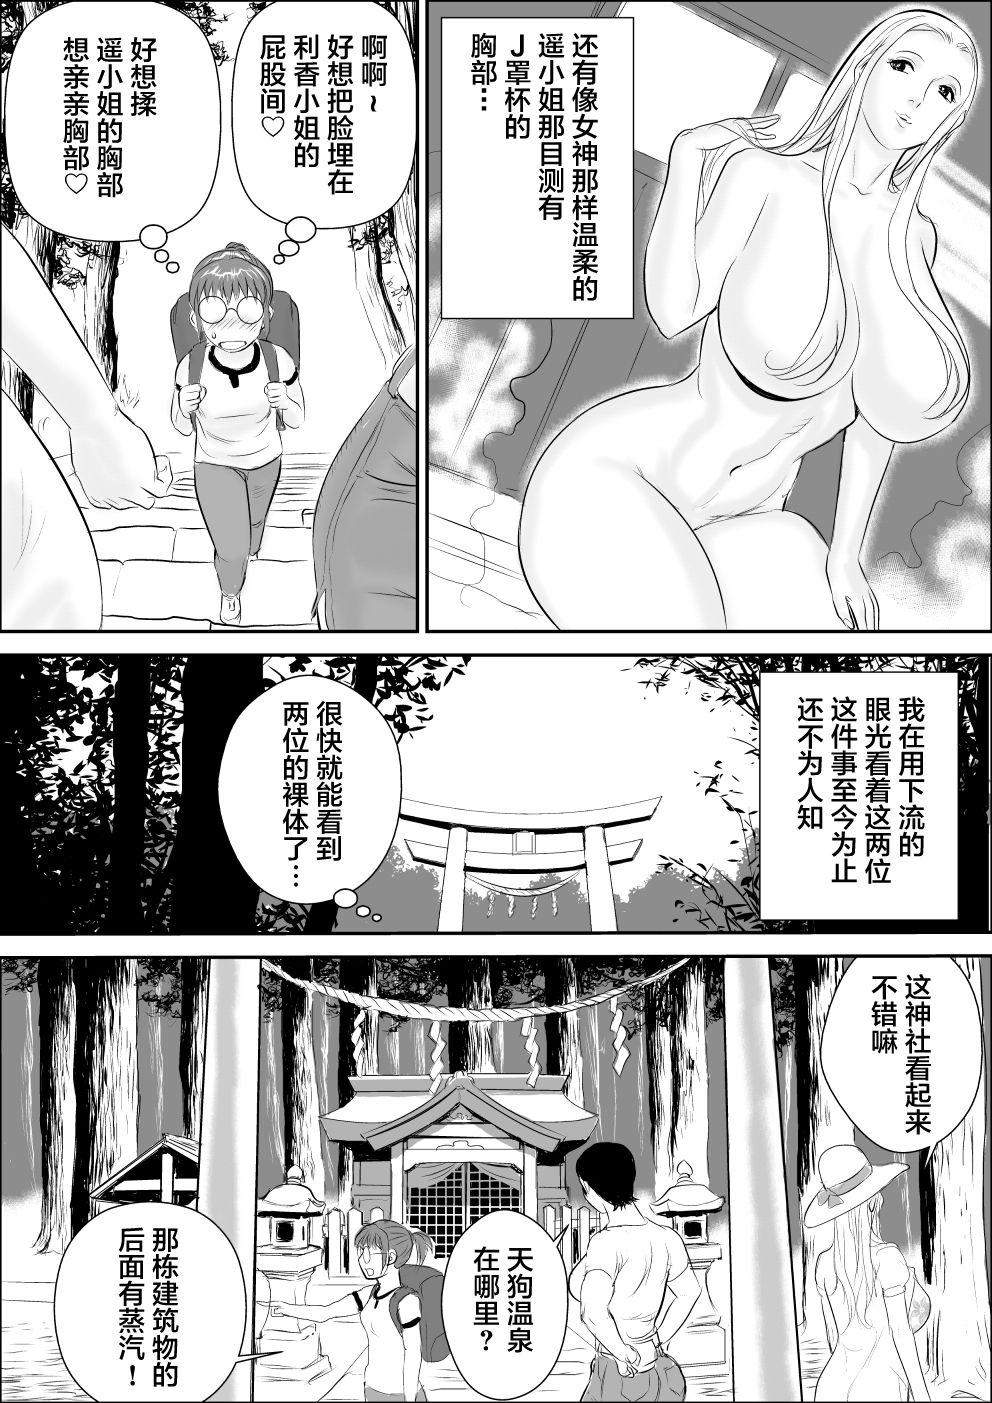 Sixtynine Tengu-sama no Kamikakushi - Original Leite - Page 8